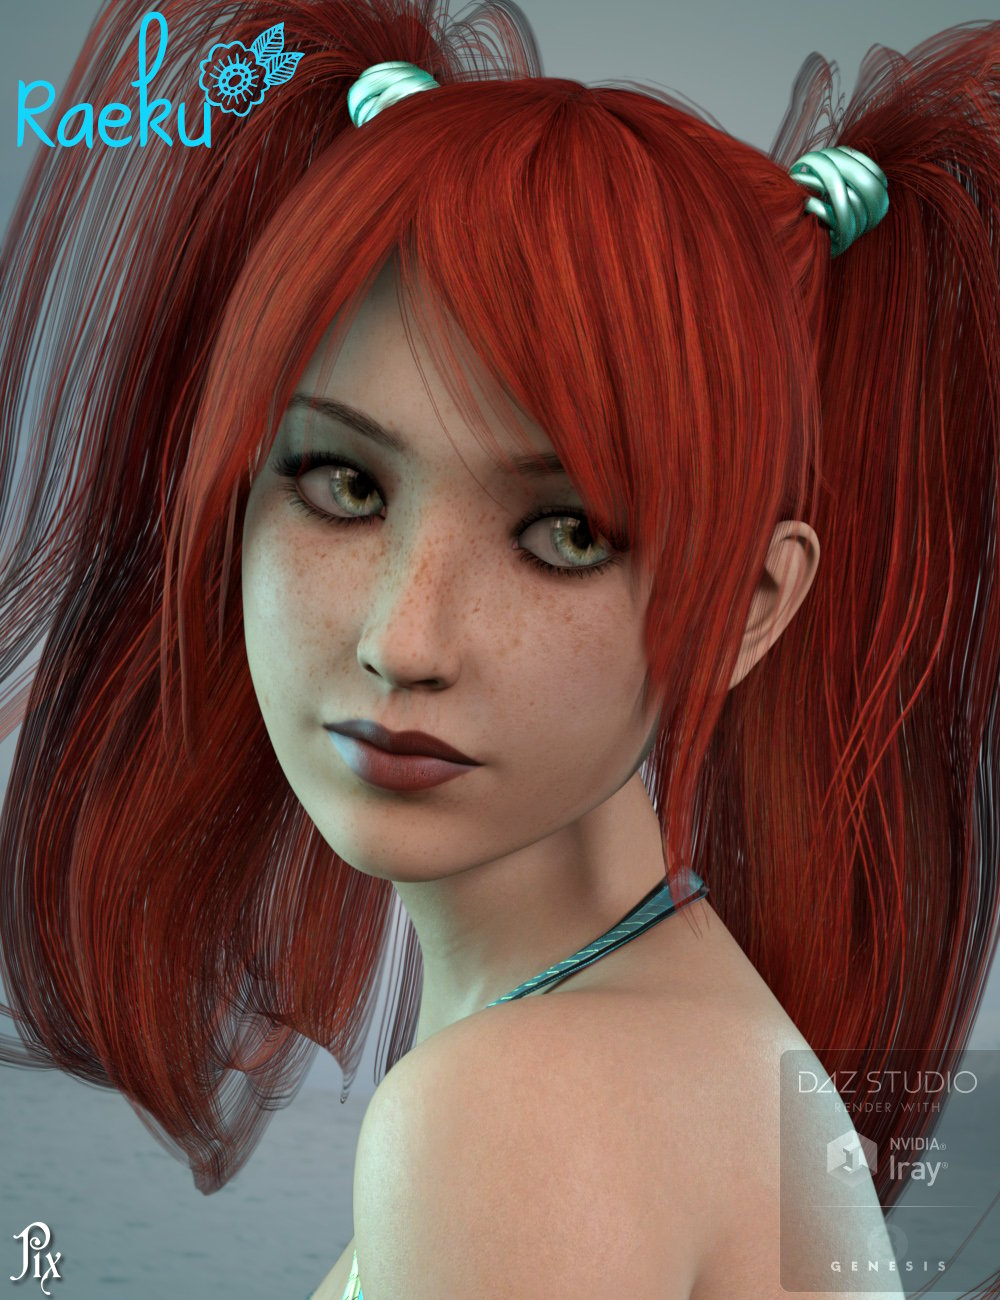 Pix Raelyn-Raeku Character and Splash Swim Wear for Genesis 3 Female(s) by: Pixelunashadownet, 3D Models by Daz 3D